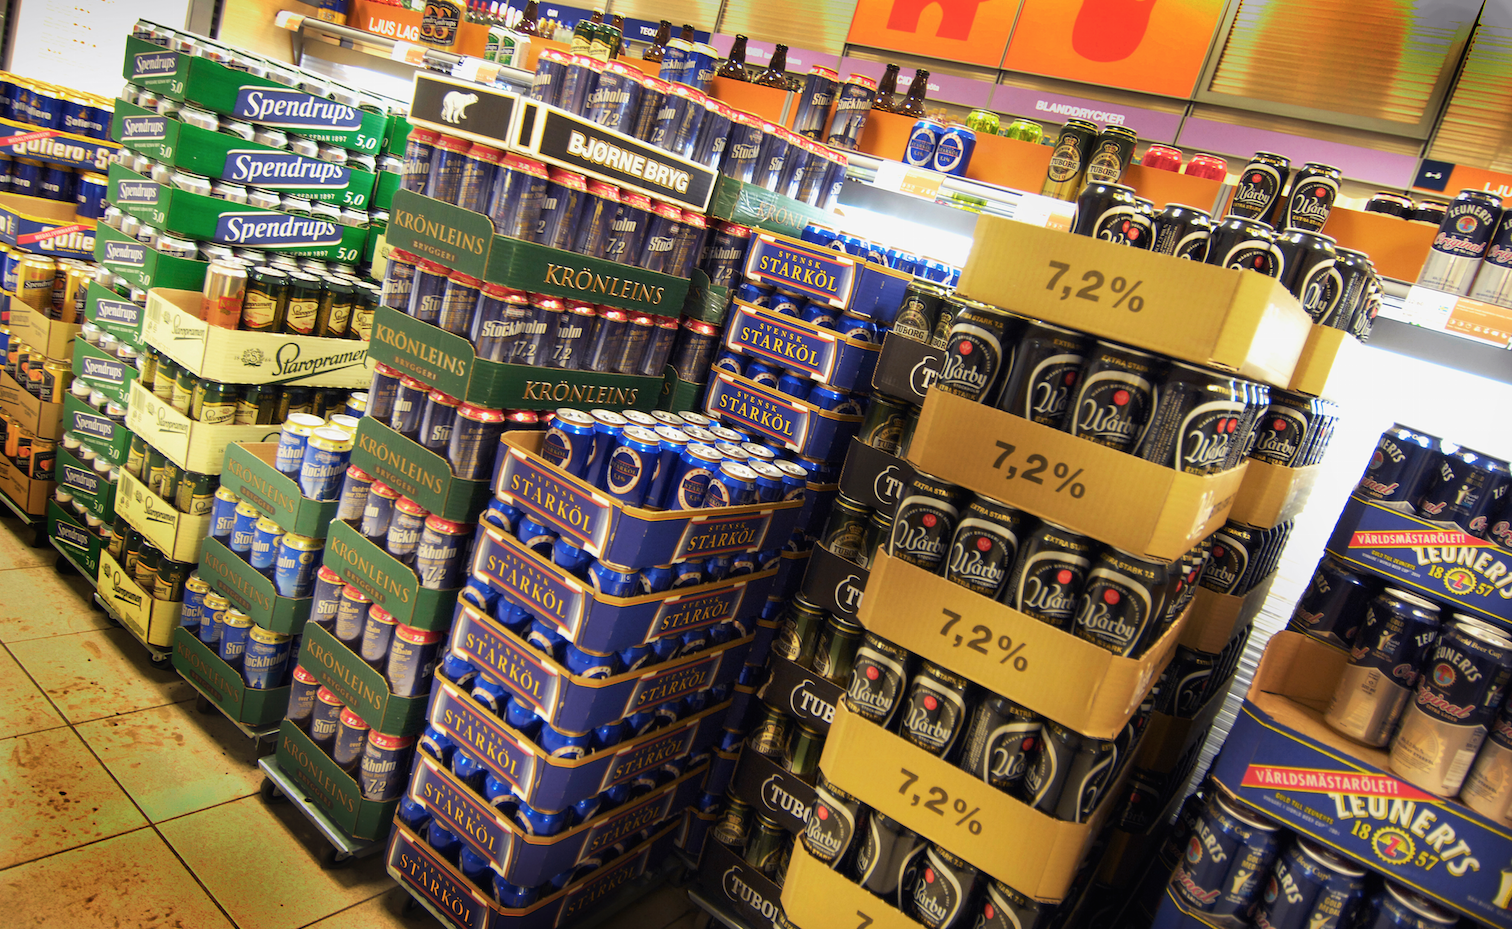 Toppolitikern vill ha kall öl på bolaget: "Måste leverera service" - Nyheter24